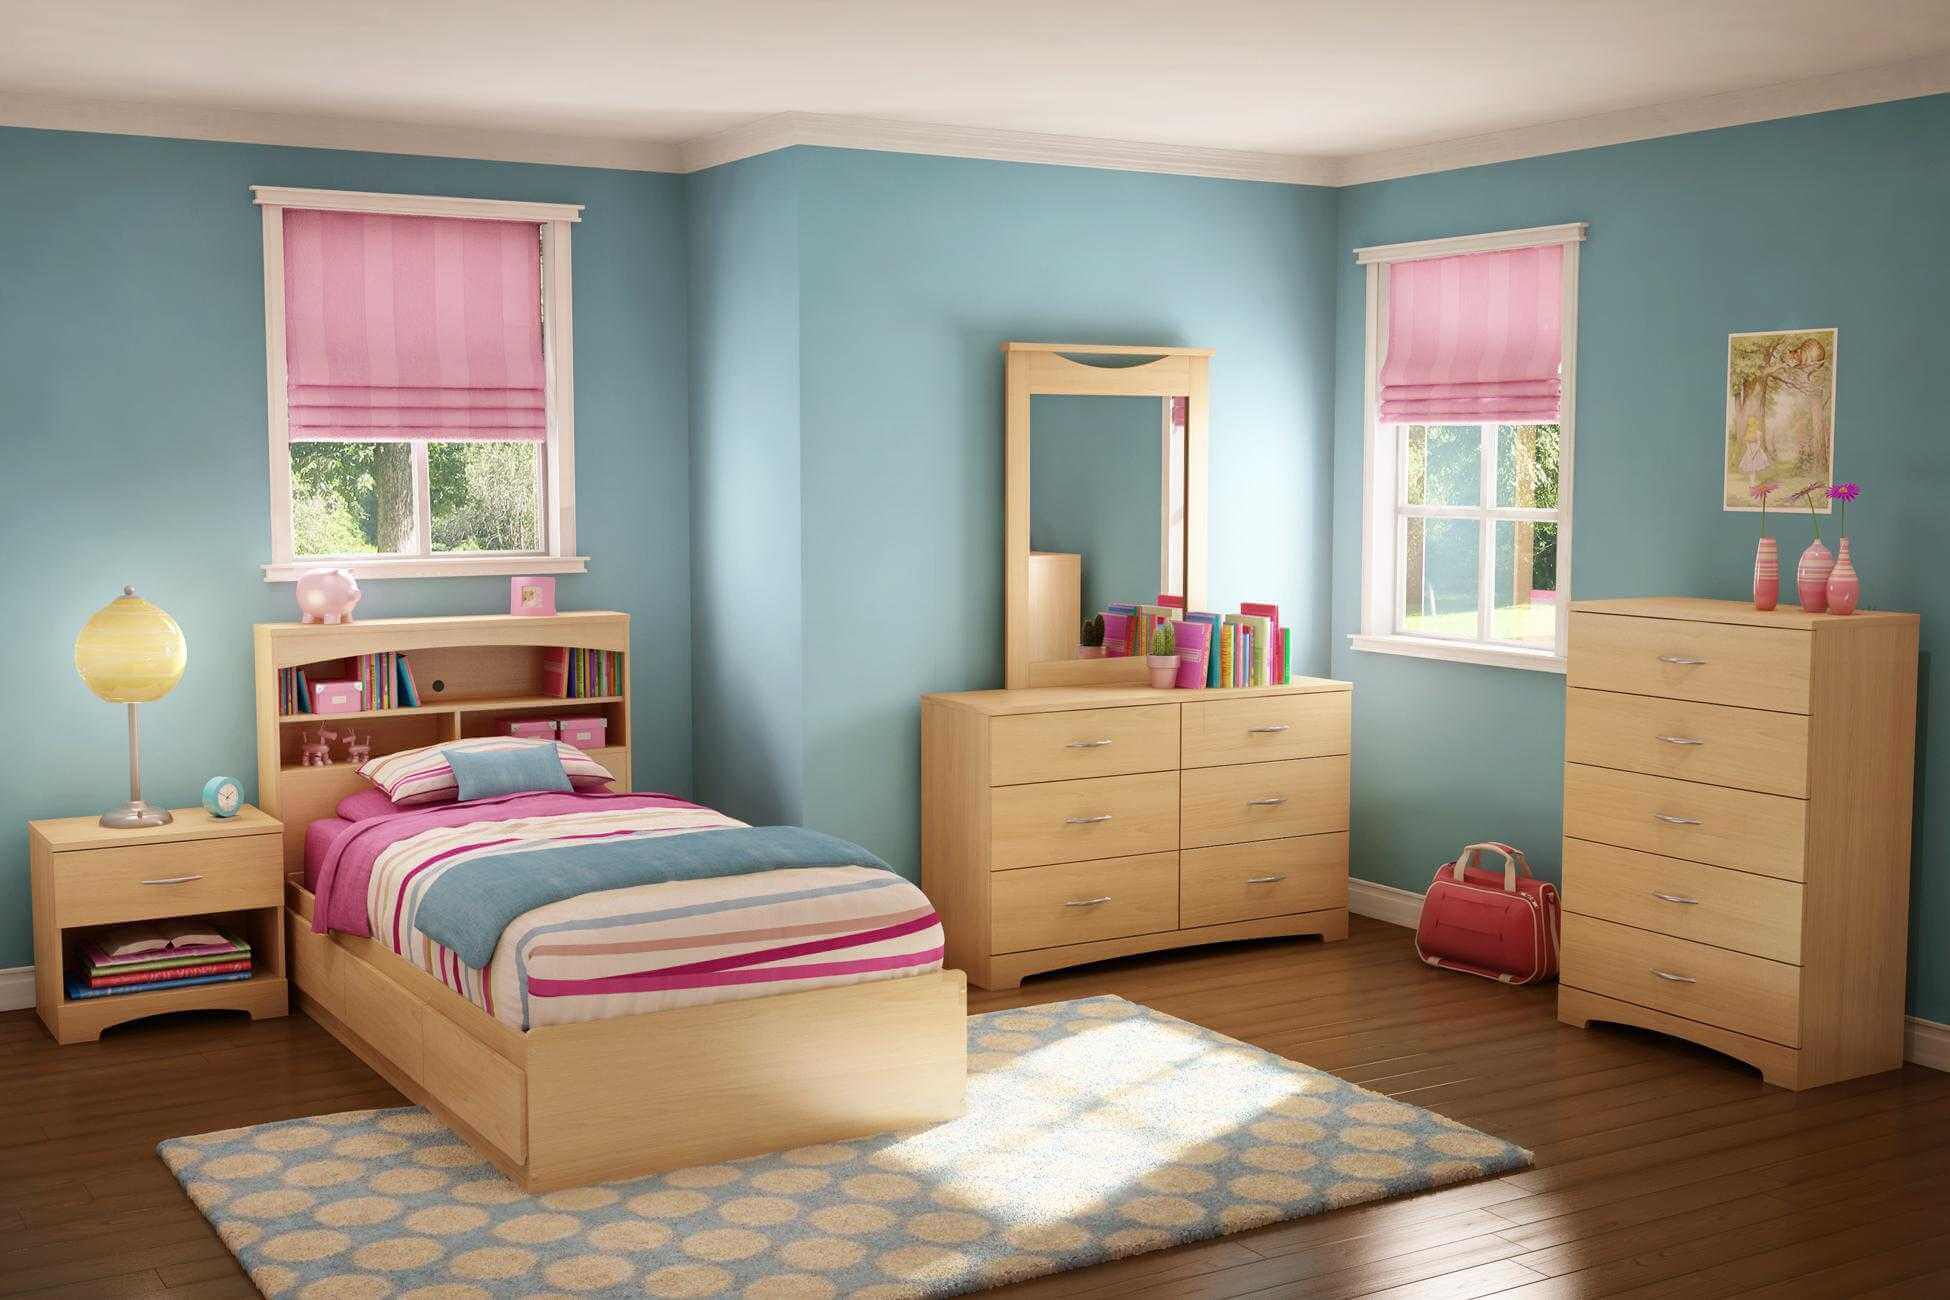 Trang Trí Phòng Ngủ Dễ Thương Đơn Giản với màu xanh lam và hồng